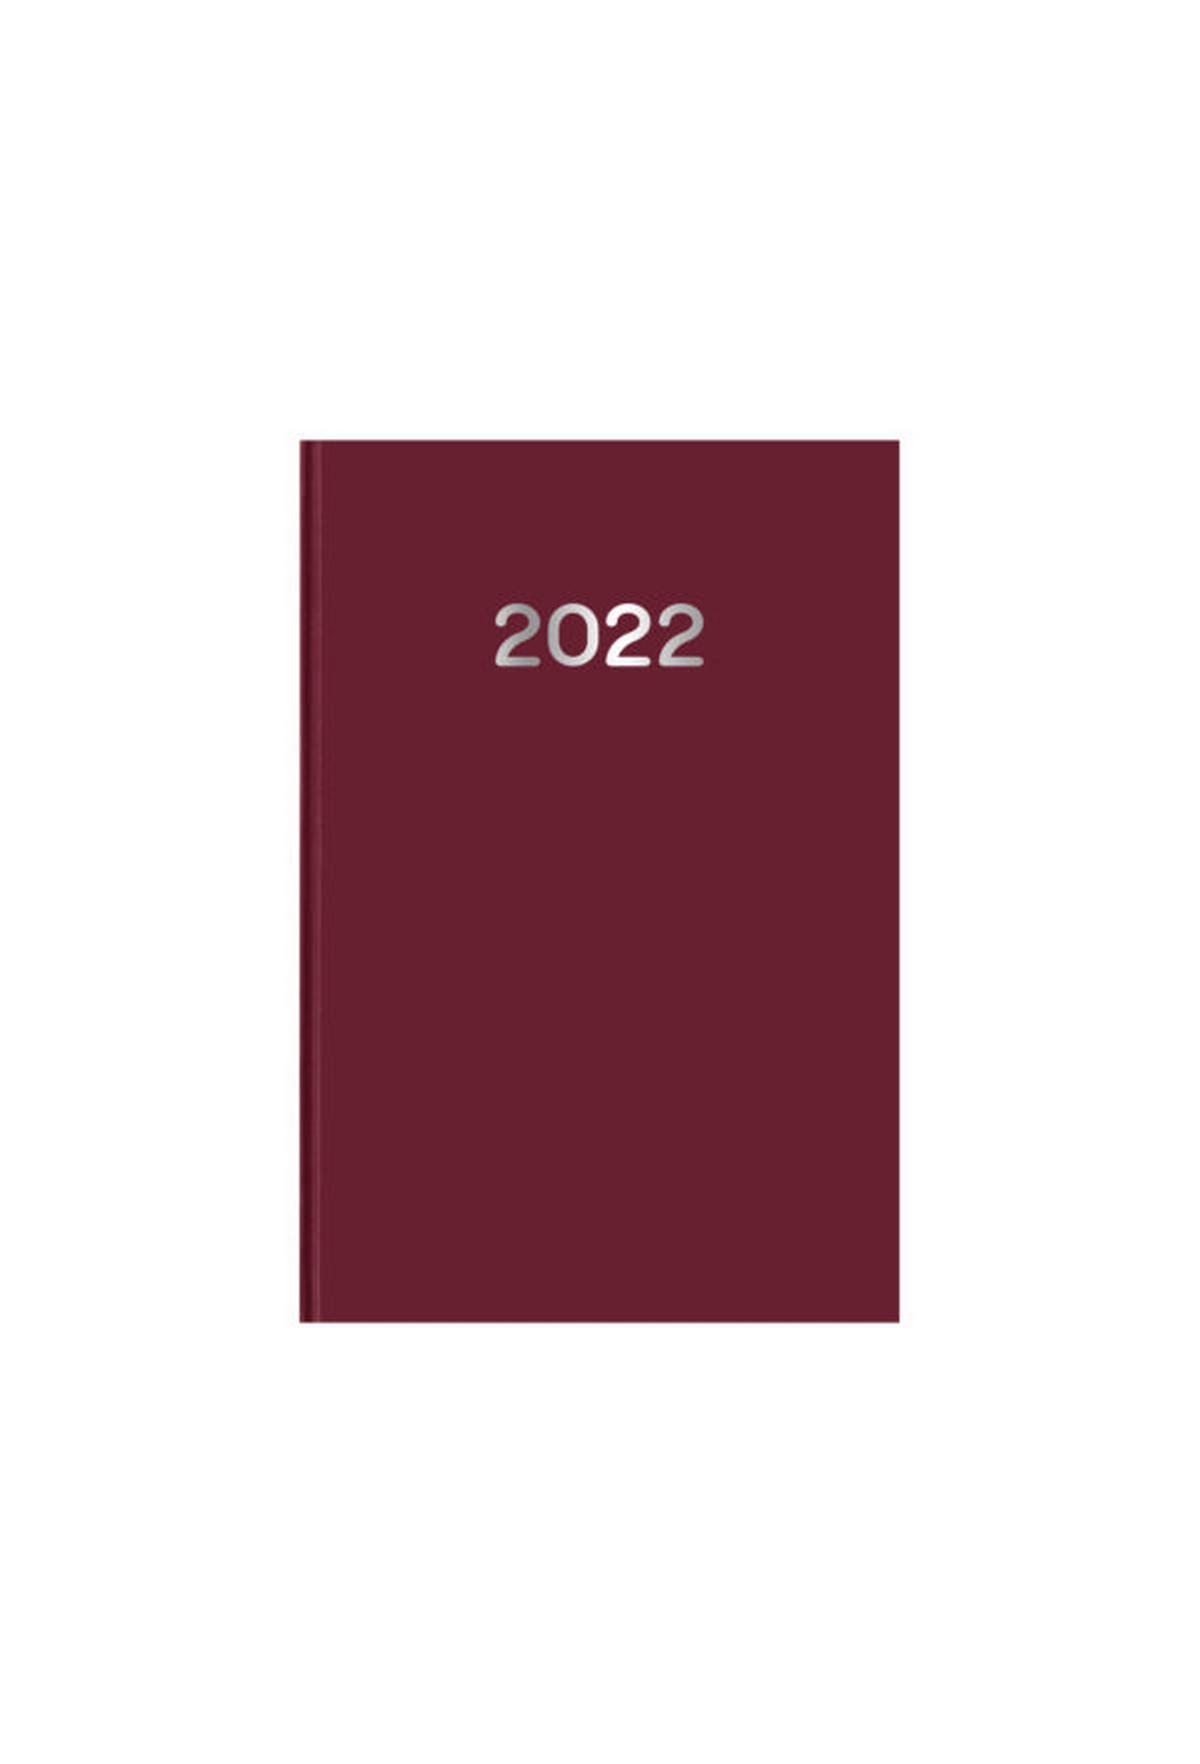 Ημερήσιο ημερολόγιο 2022 simple μπορντώ 10 x 14 cm